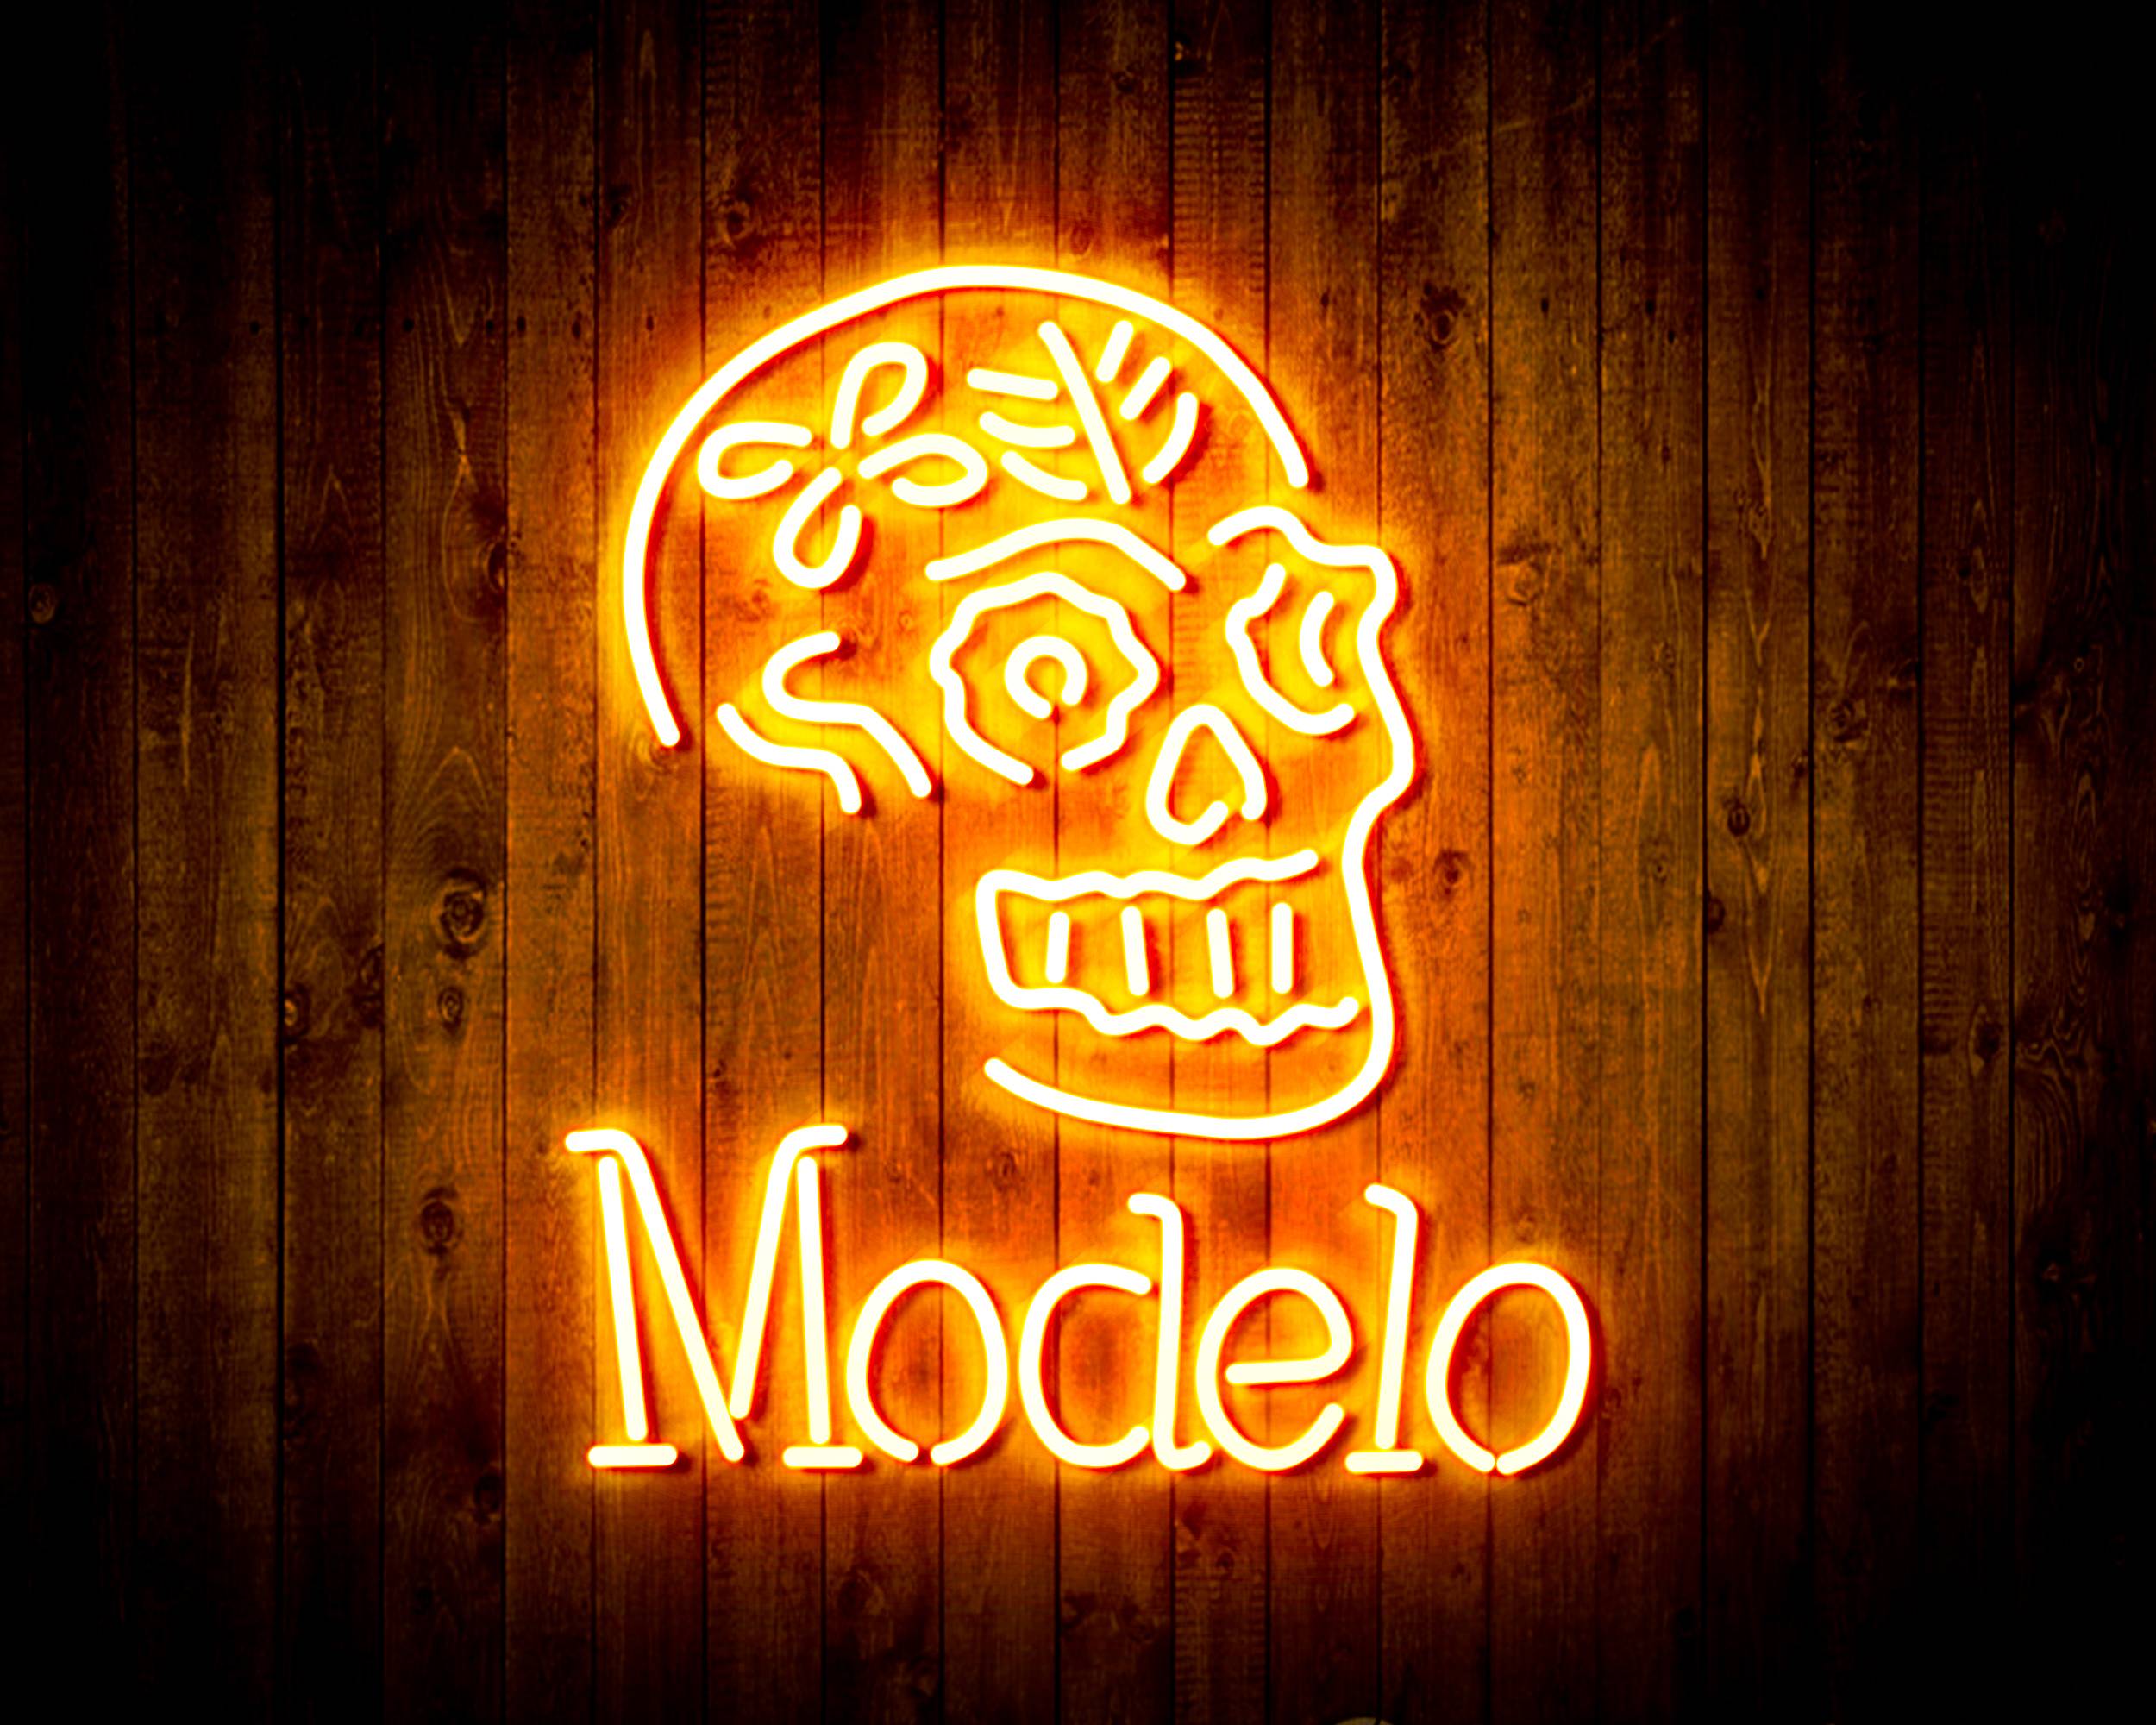 Modelo Beer with Skull Handmade Neon Flex LED Sign